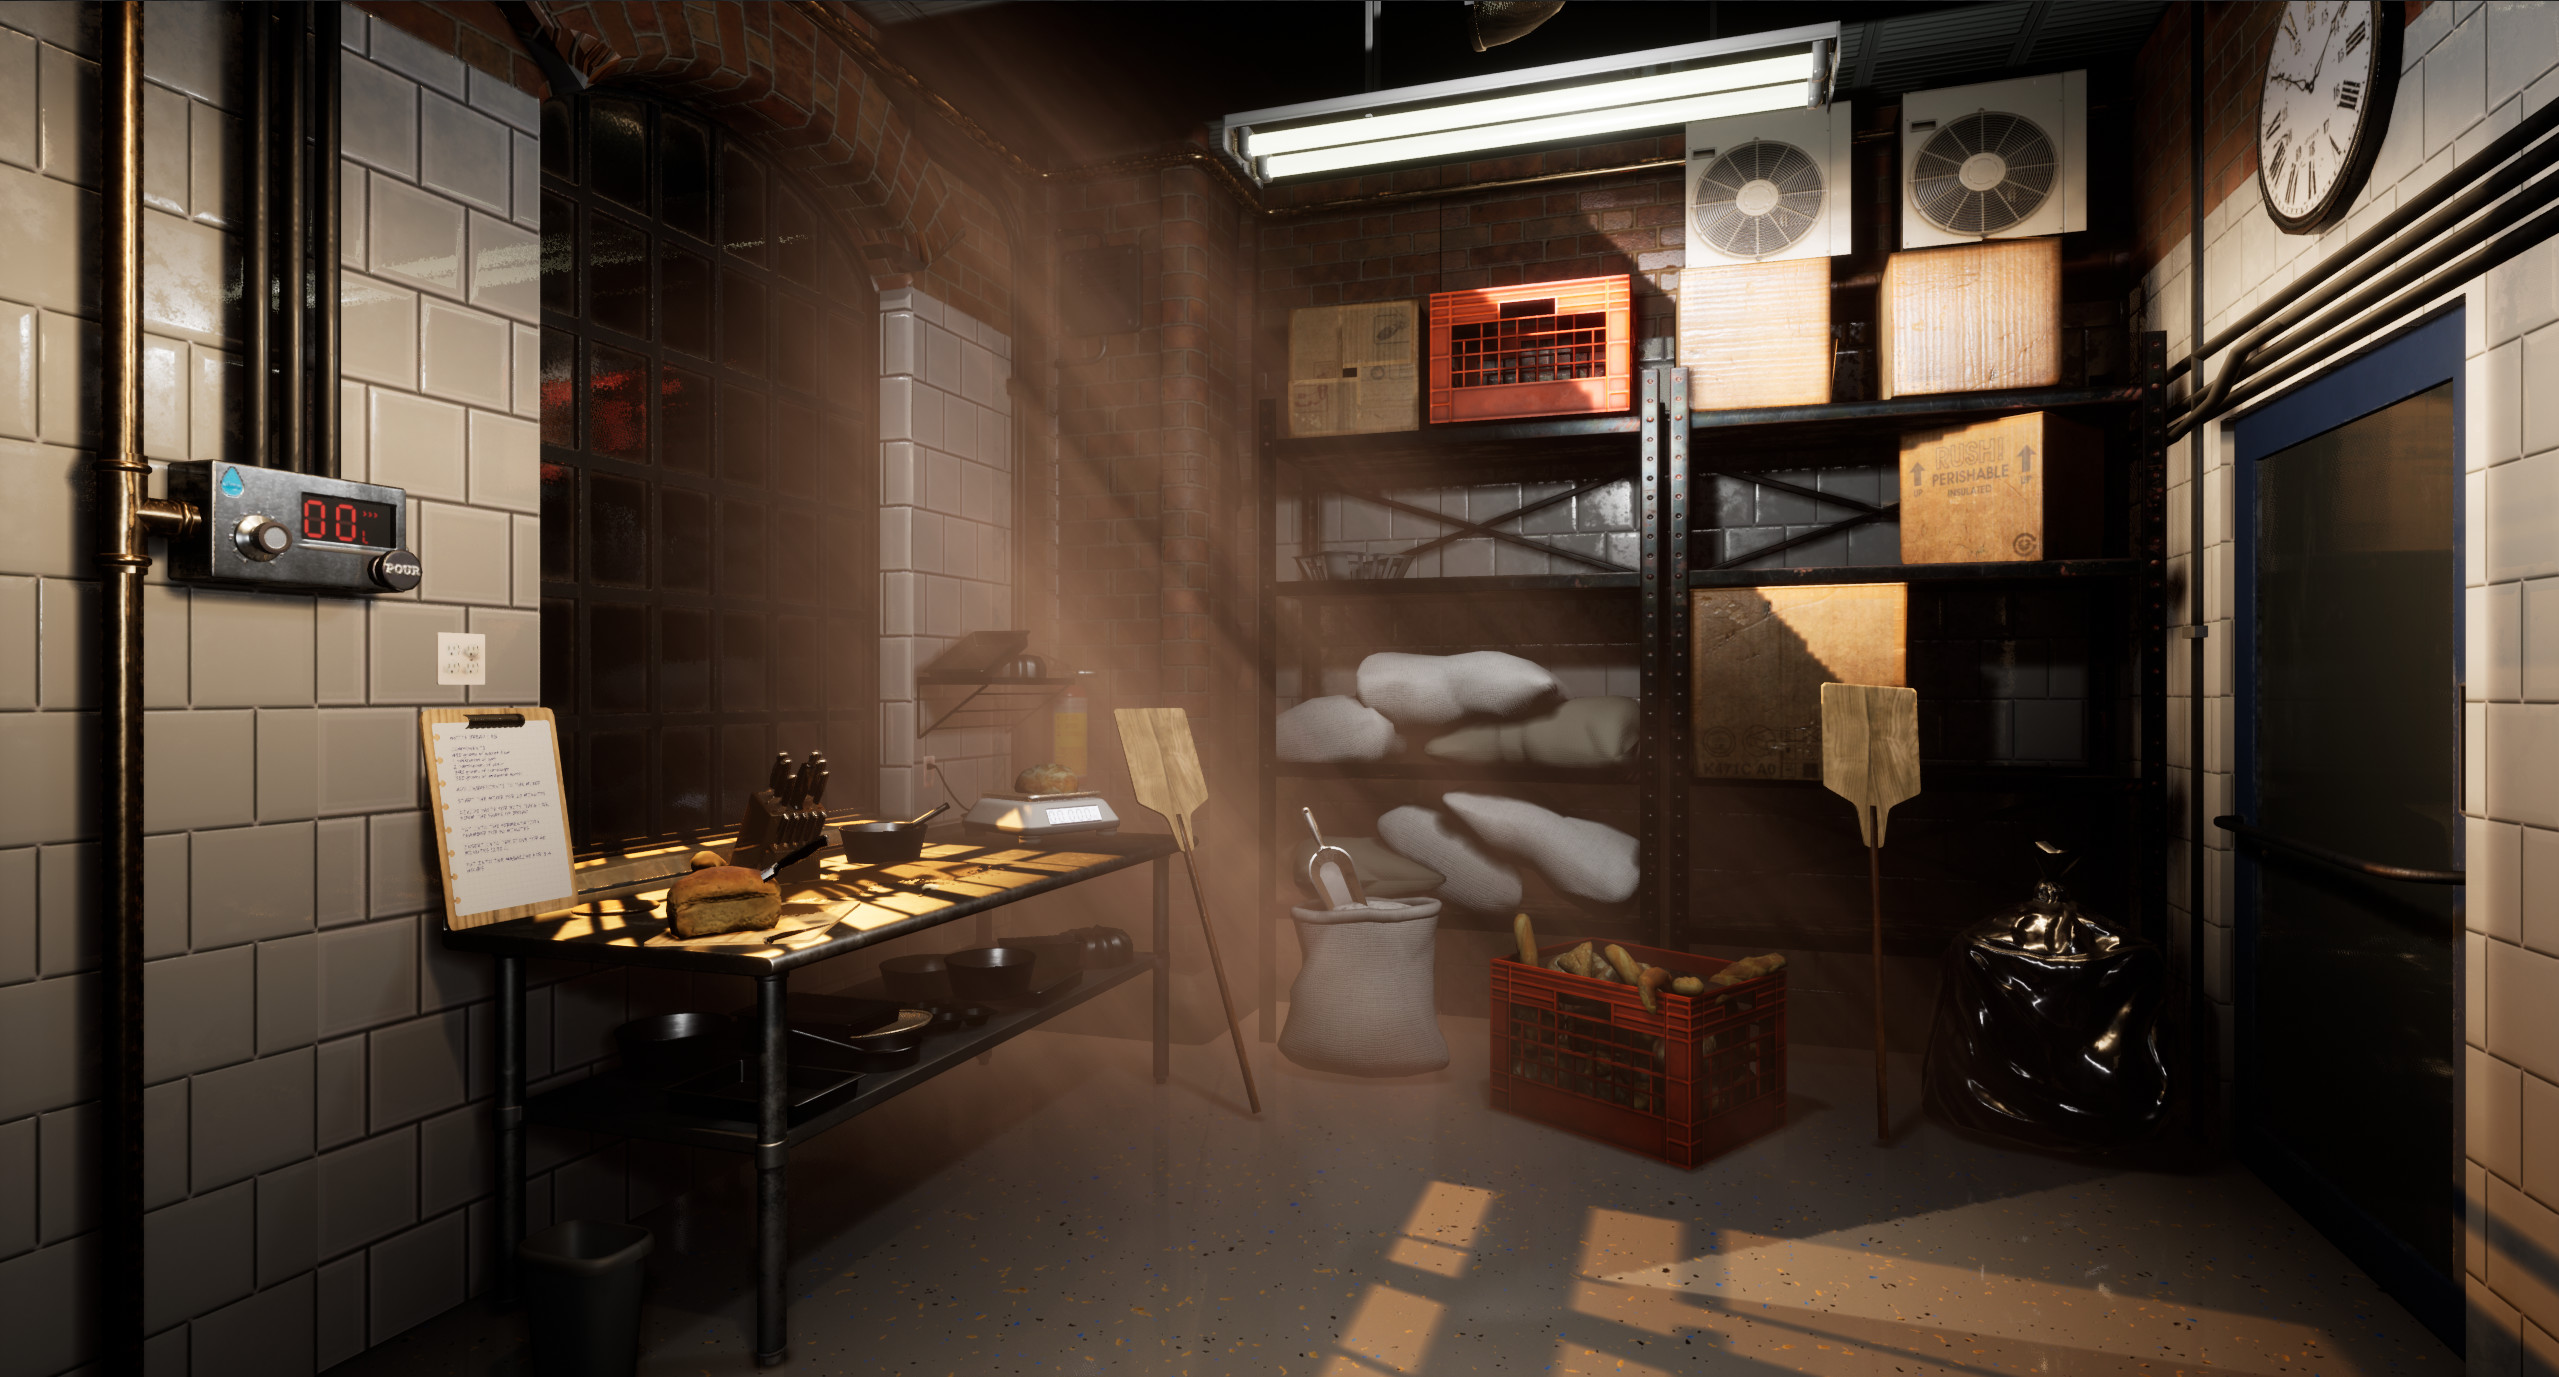 Bakery Simulator screenshot